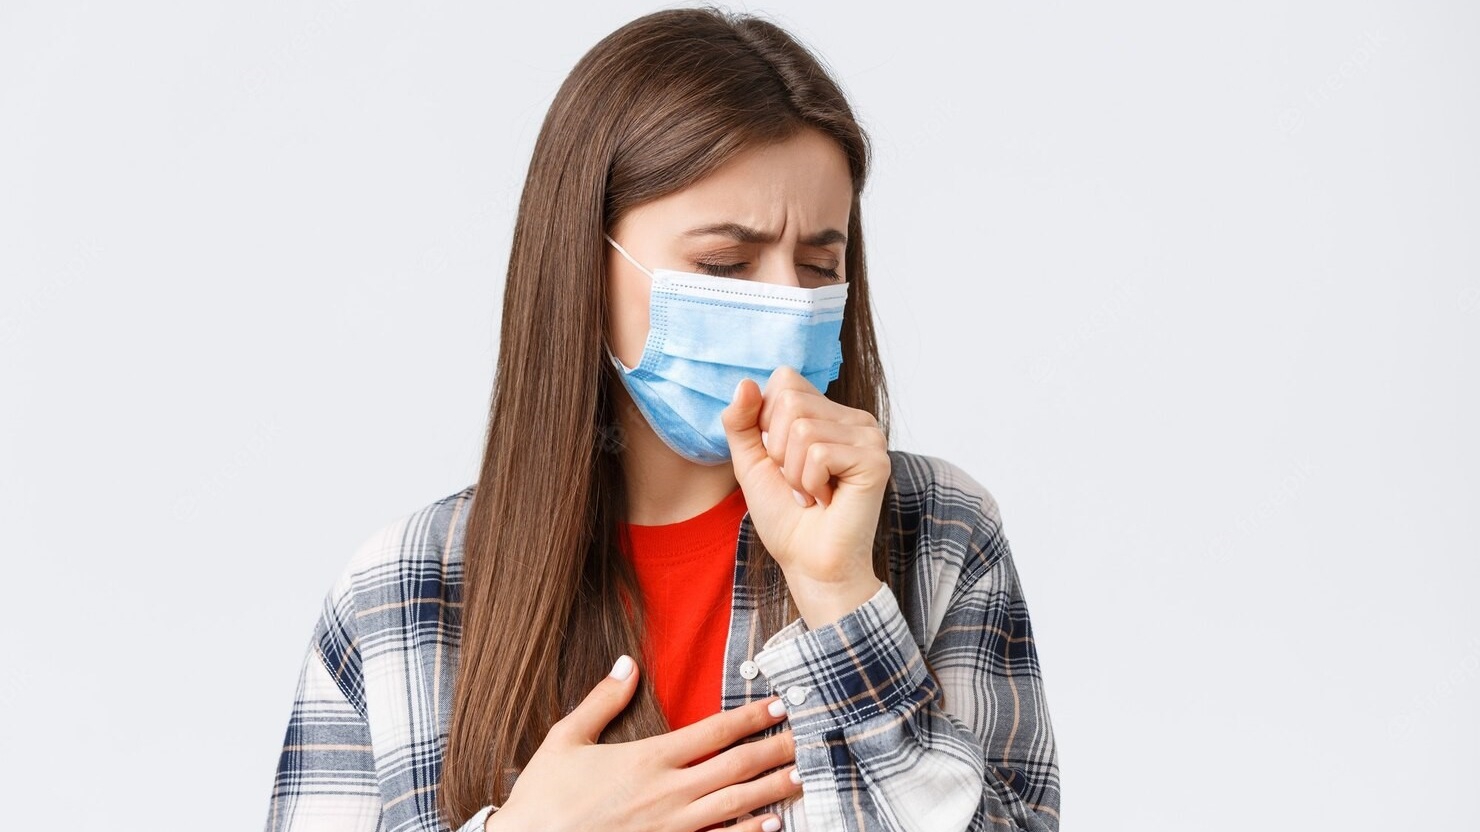 Lao phổi là bệnh truyền nhiễm hay không, và cách lây nhiễm?
